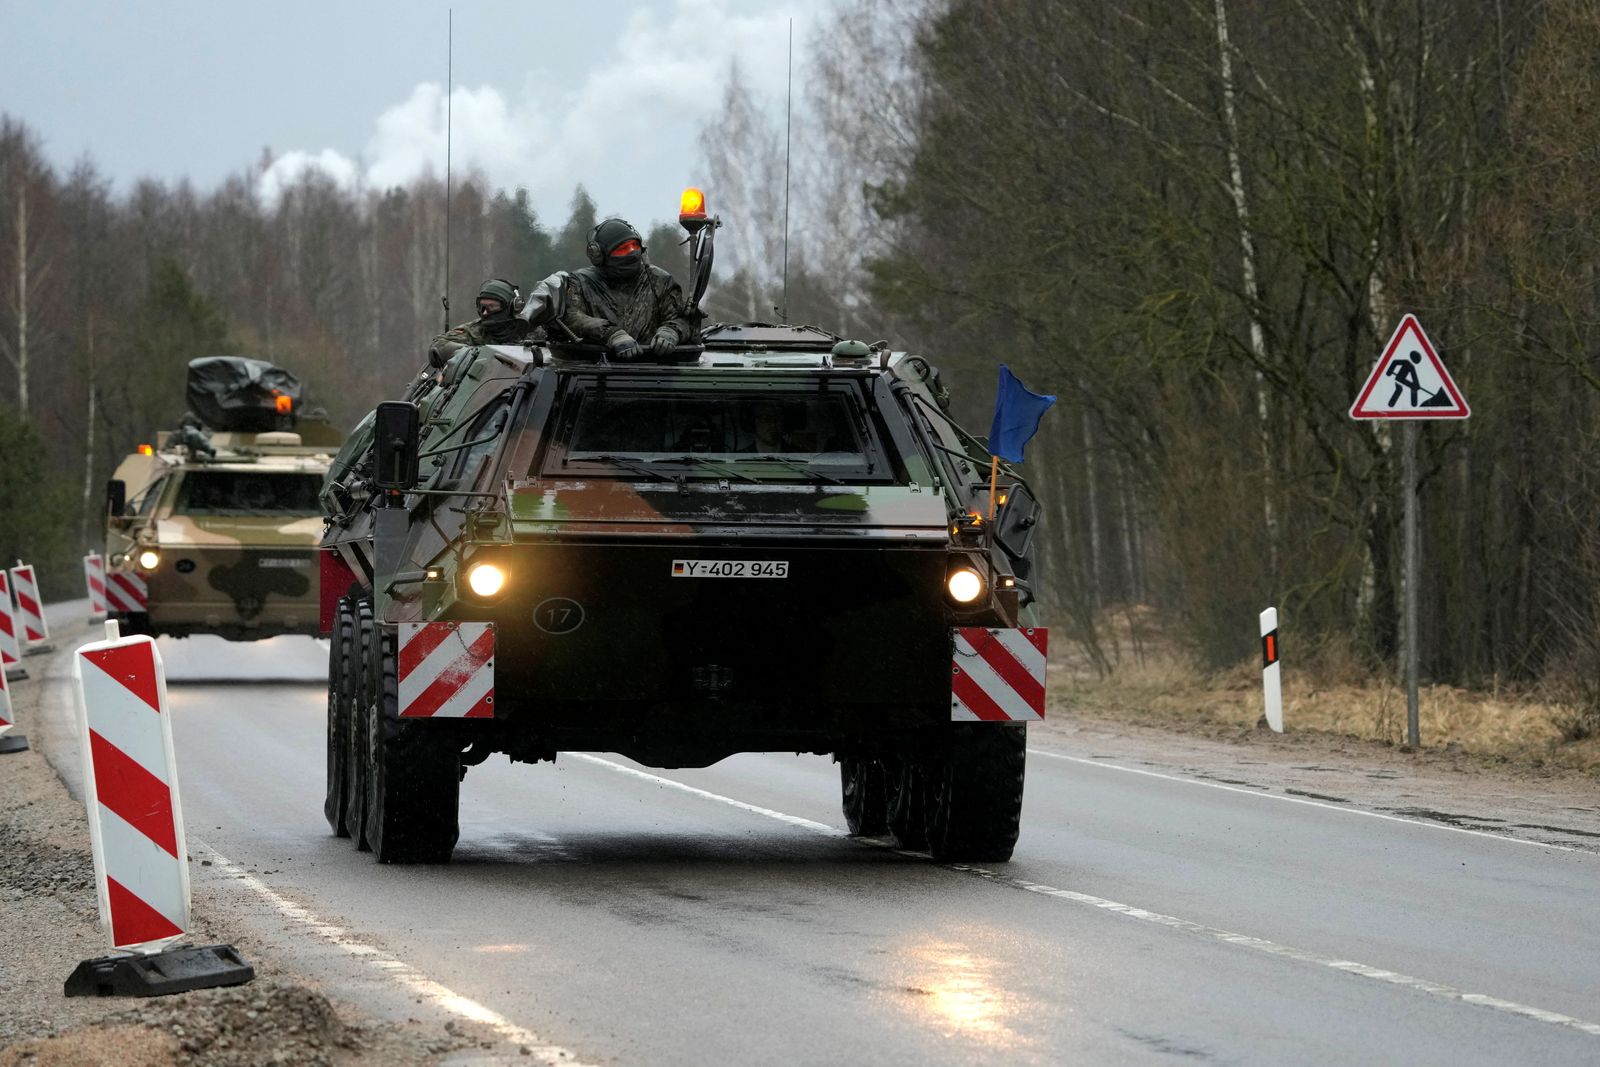 جانب من وصول مركبات عسكرية تعزيزية للمجموعة القتالية للناتو بقيادة ألمانيا إلى قاعدة روكلا العسكرية في ليتوانيا 17 فبراير 2022 - REUTERS